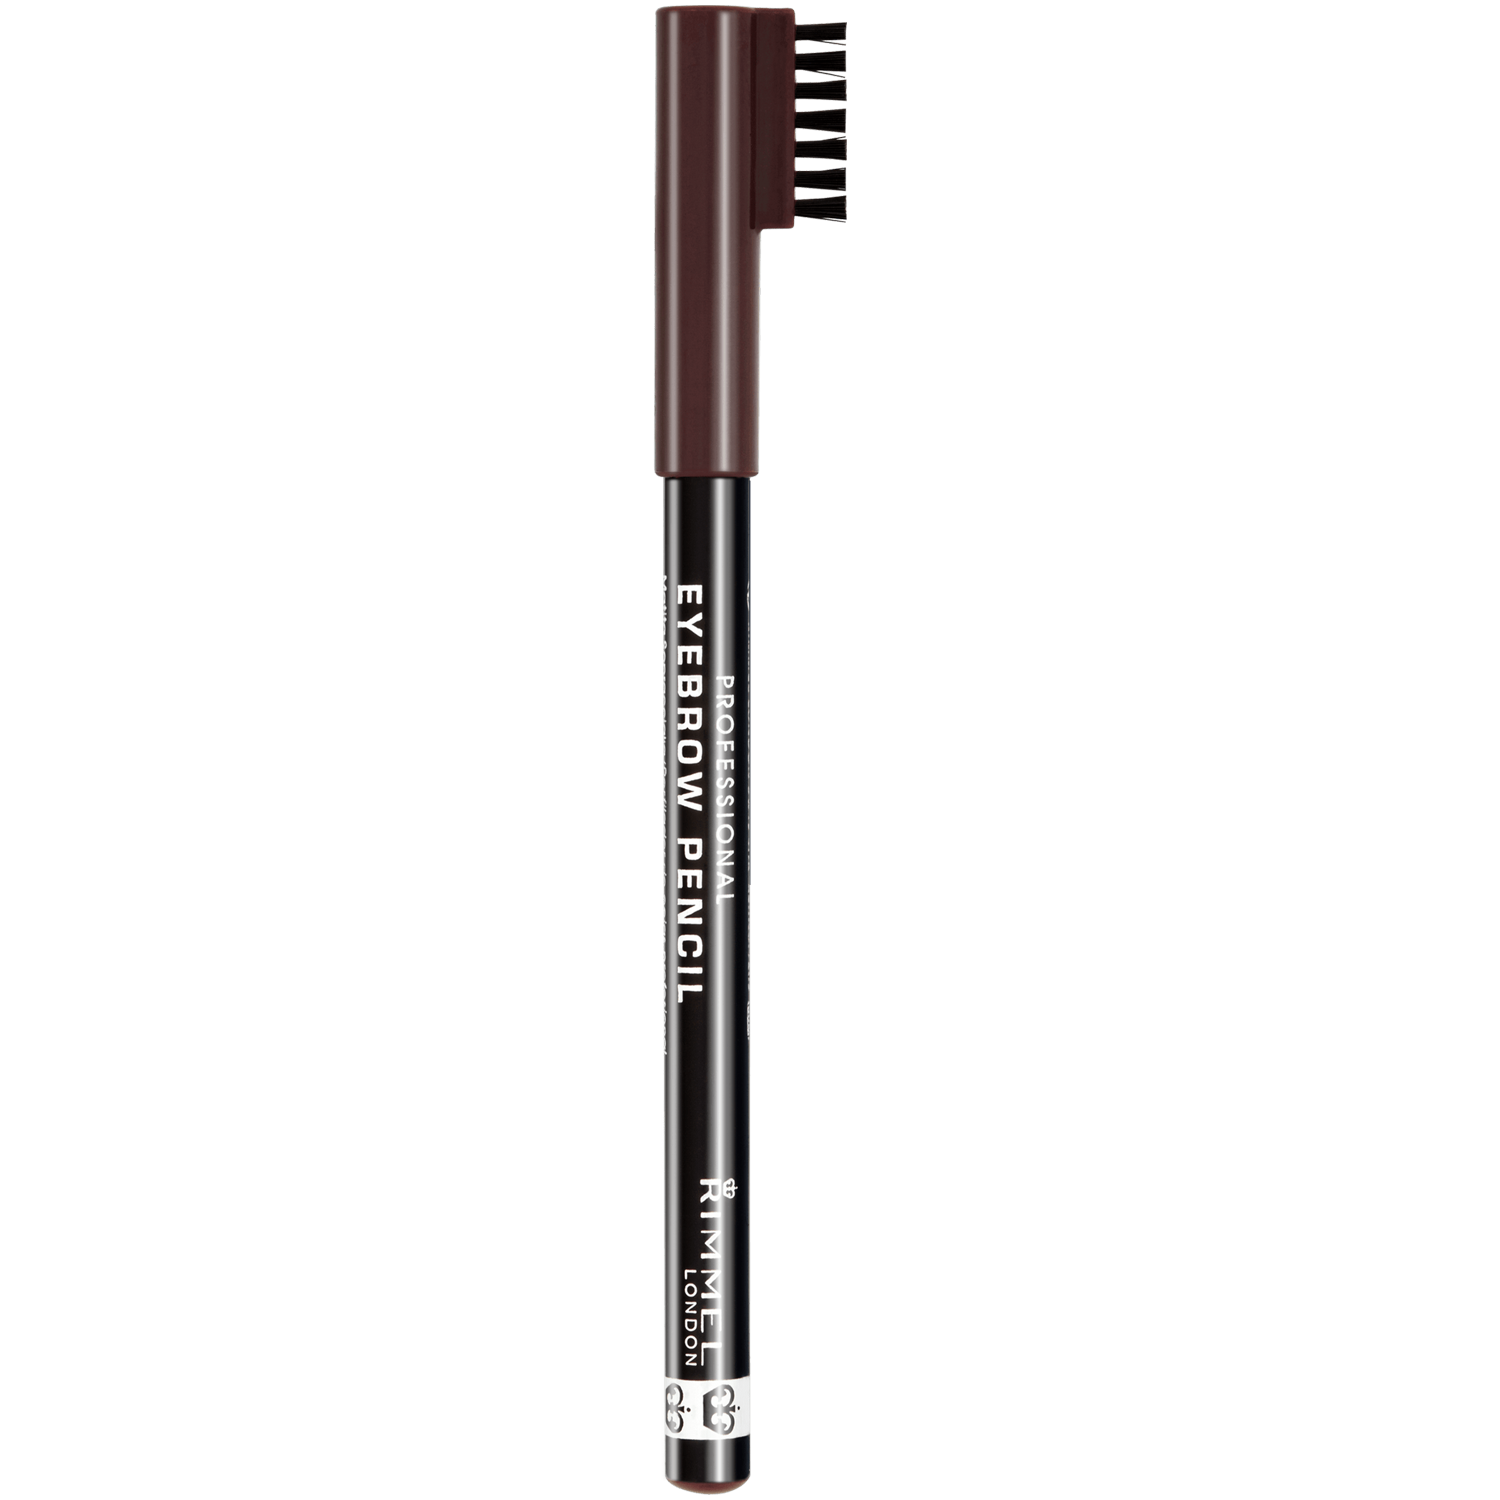 Карандаш для бровей с расческой темно-коричневый 0 Rimmel Professional, 1 гр набор для окрашивания и коррекции формы бровей brow defining тени восковой карандаш кисть с щеточкой